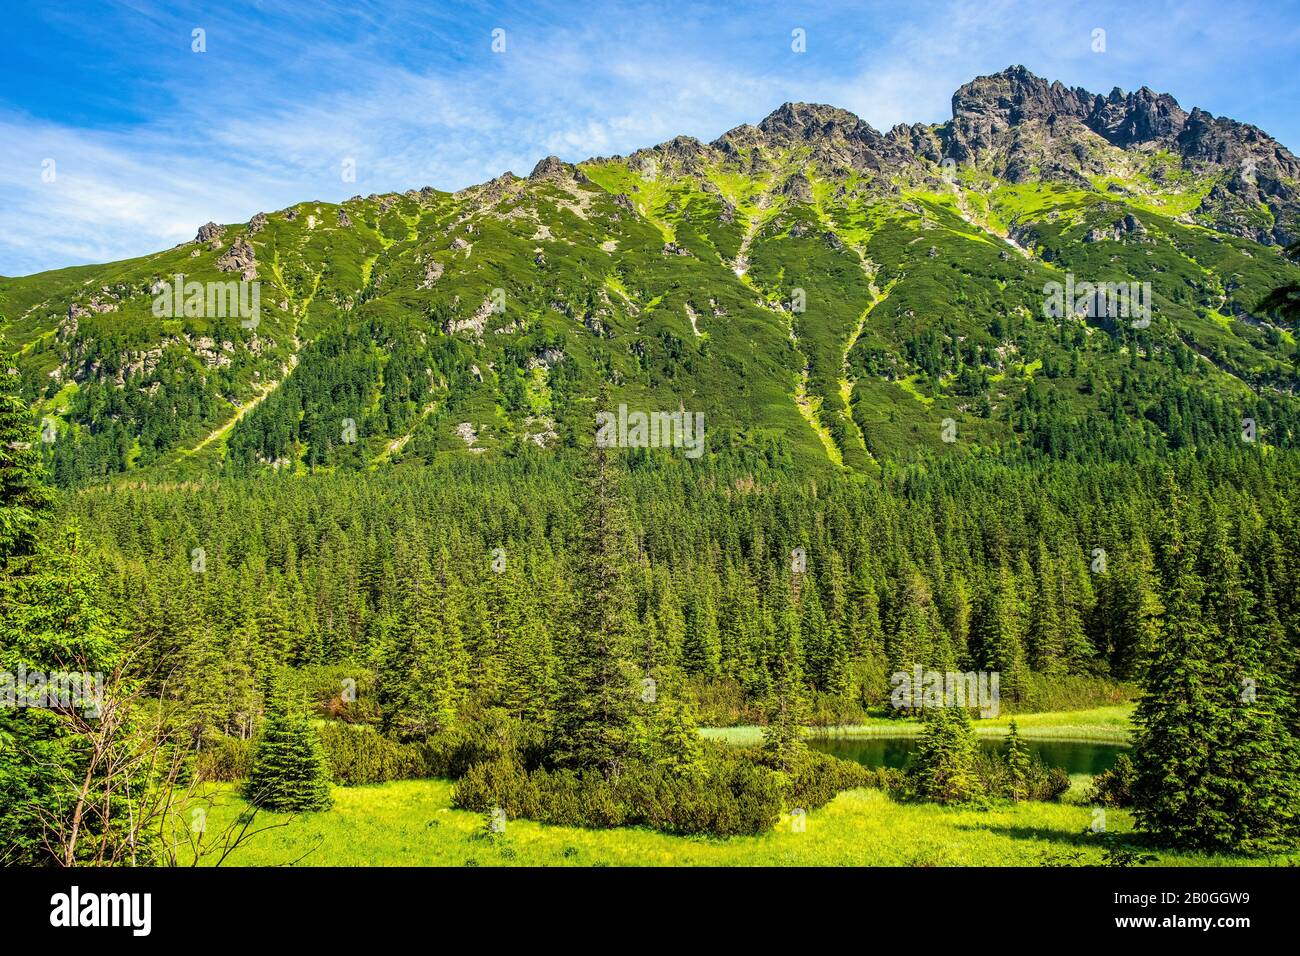 Vista panoramica del crinale dei sette Granati - Siedem Granatow - all'interno della catena Zabia Gran sopra la valle di Rybi Potok nei Monti Tatra, vicino a Zakopane, Polonia Foto Stock